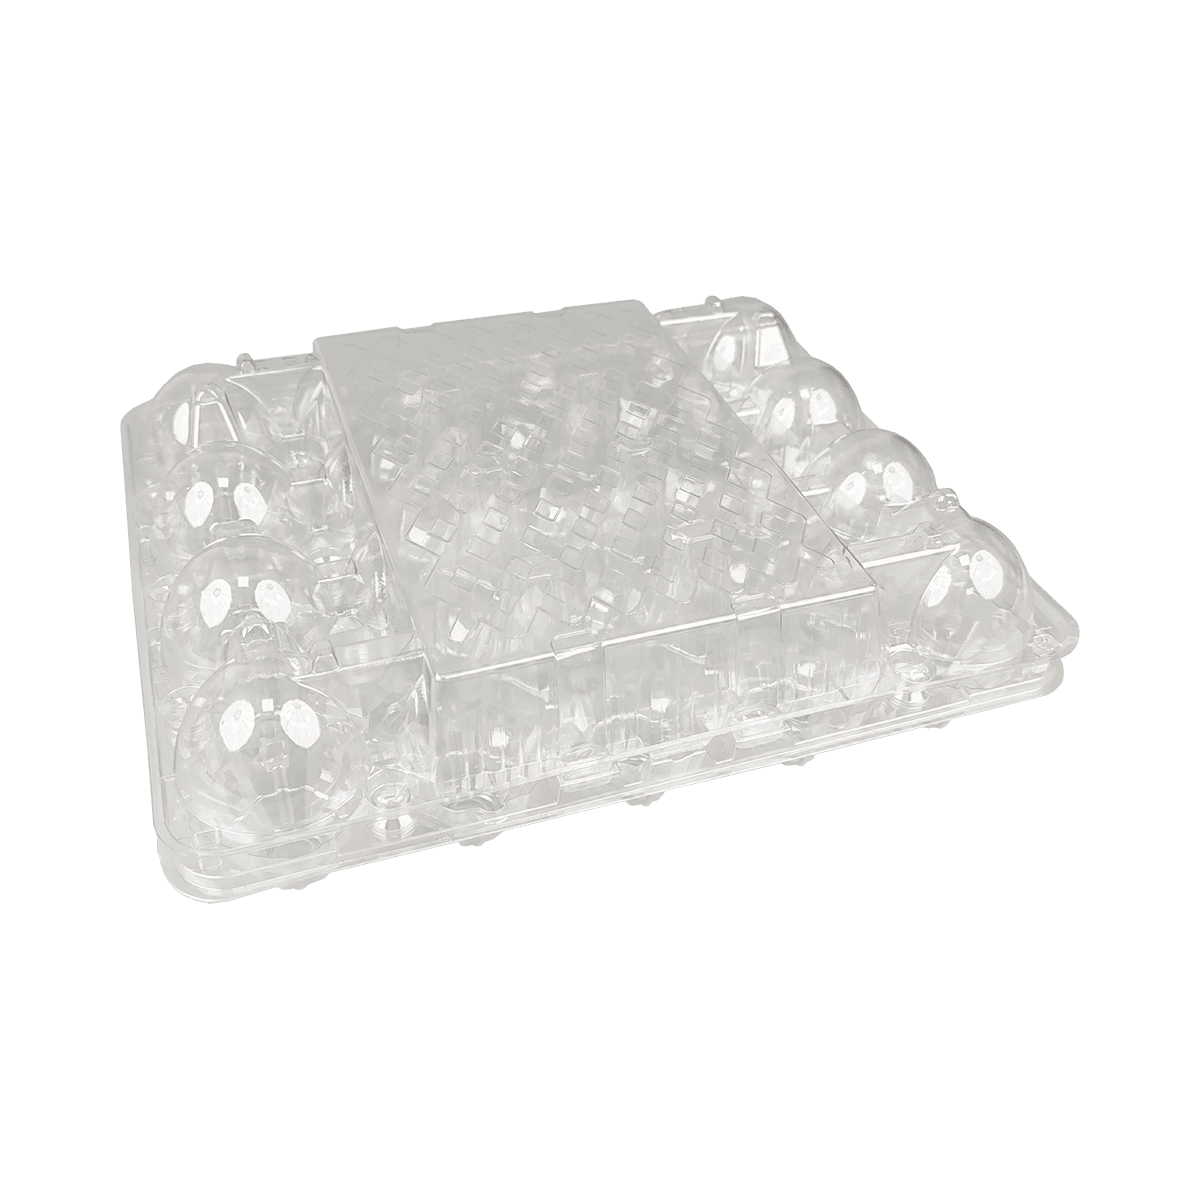 Caja fuerte para almacenamiento, fácil de ver, transparente, 20 cartones de huevos aptos para exhibición.